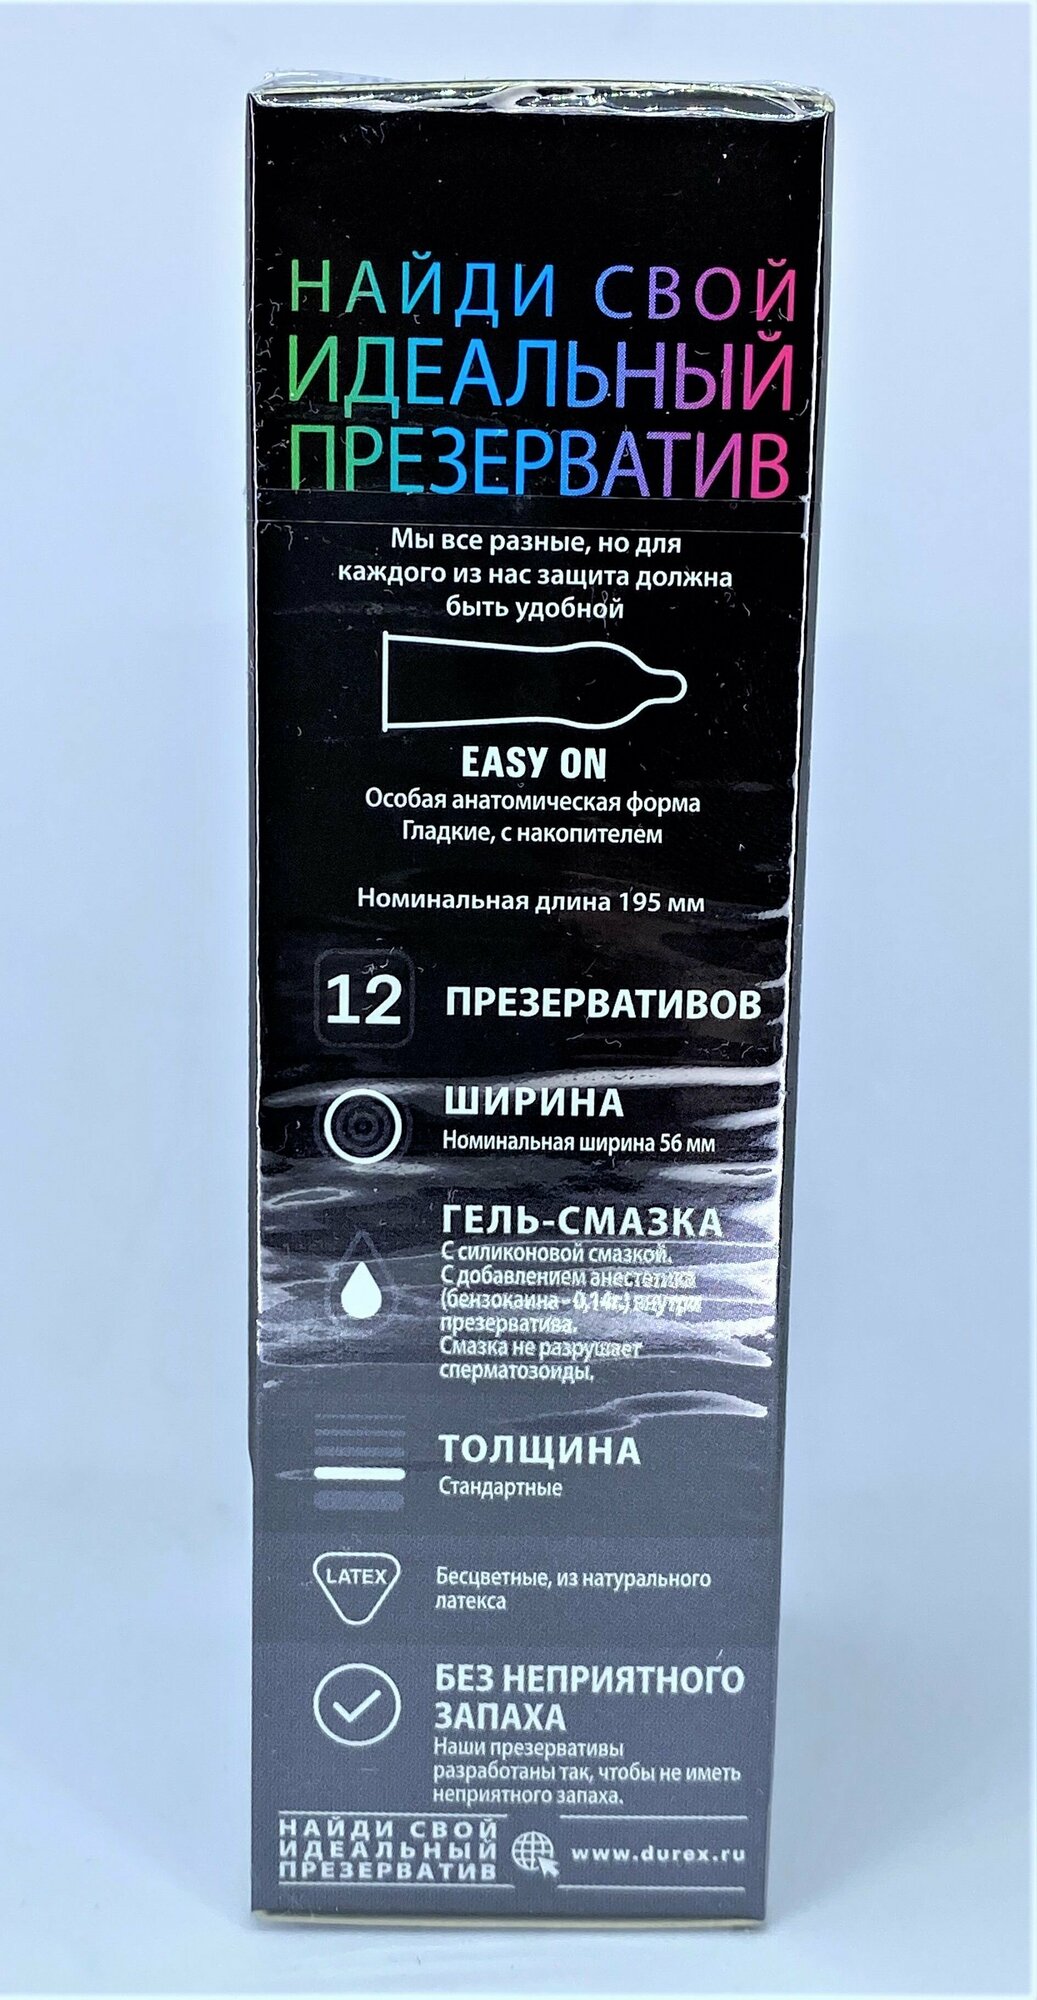 Презервативы Durex (Дюрекс) с анестетиком Infinity гладкие, вариант 2, 3 шт. Рекитт Бенкизер Хелскэар (ЮК) Лтд - фото №11